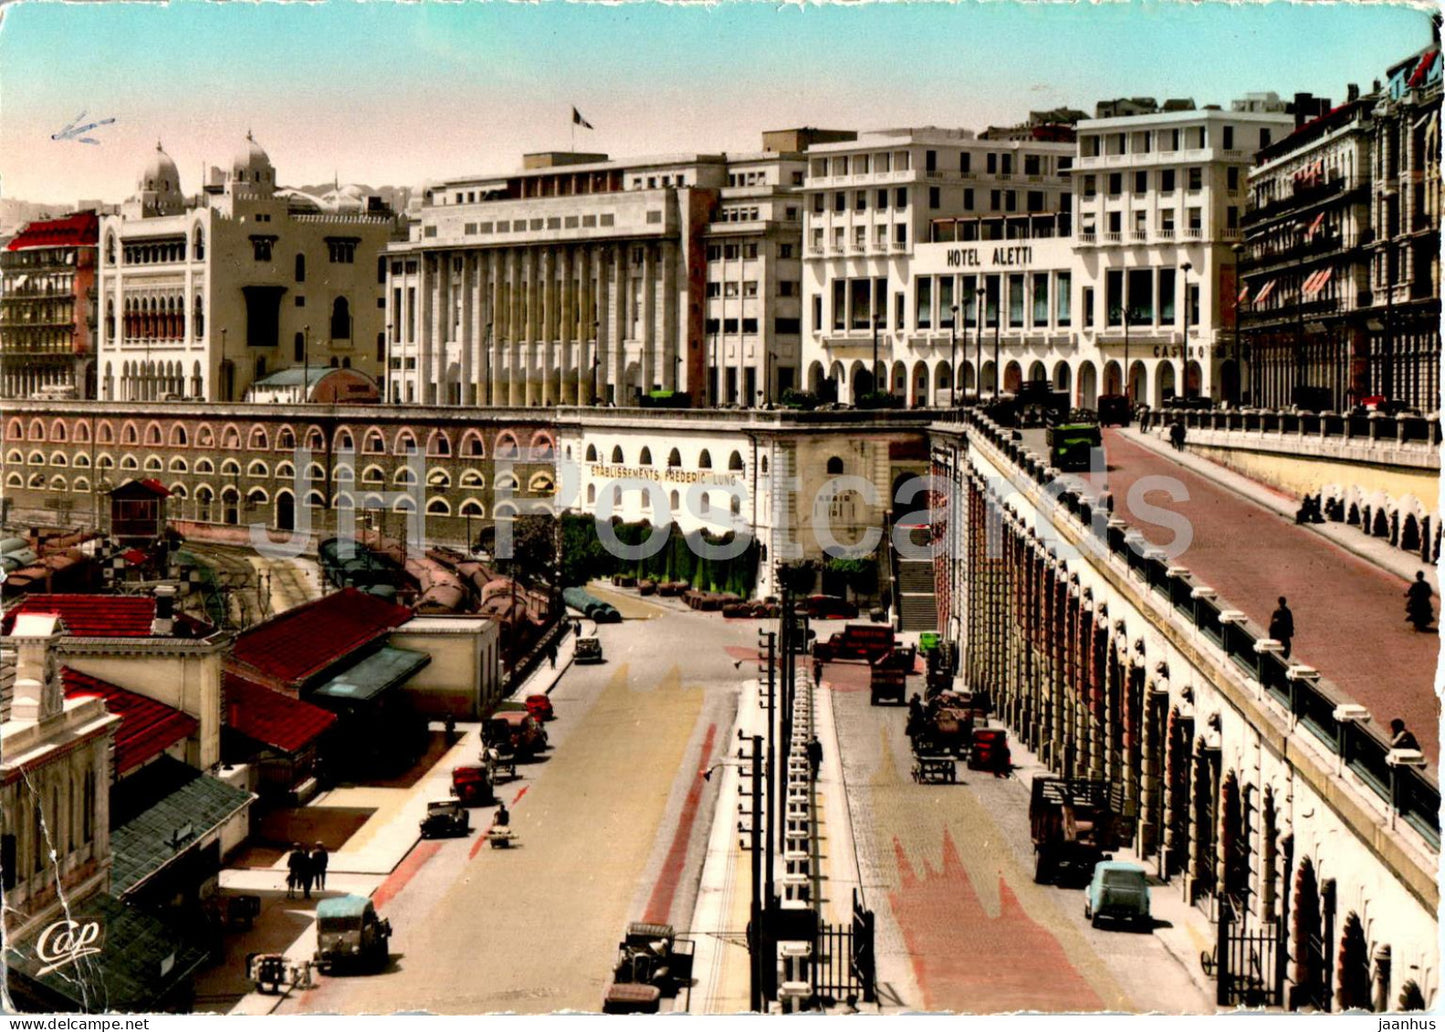 Alger - Algiers - Le Boulevard Carnot - La Mairie et la Prefecture - 473 - old postcard - 1958 - Algeria - used - JH Postcards